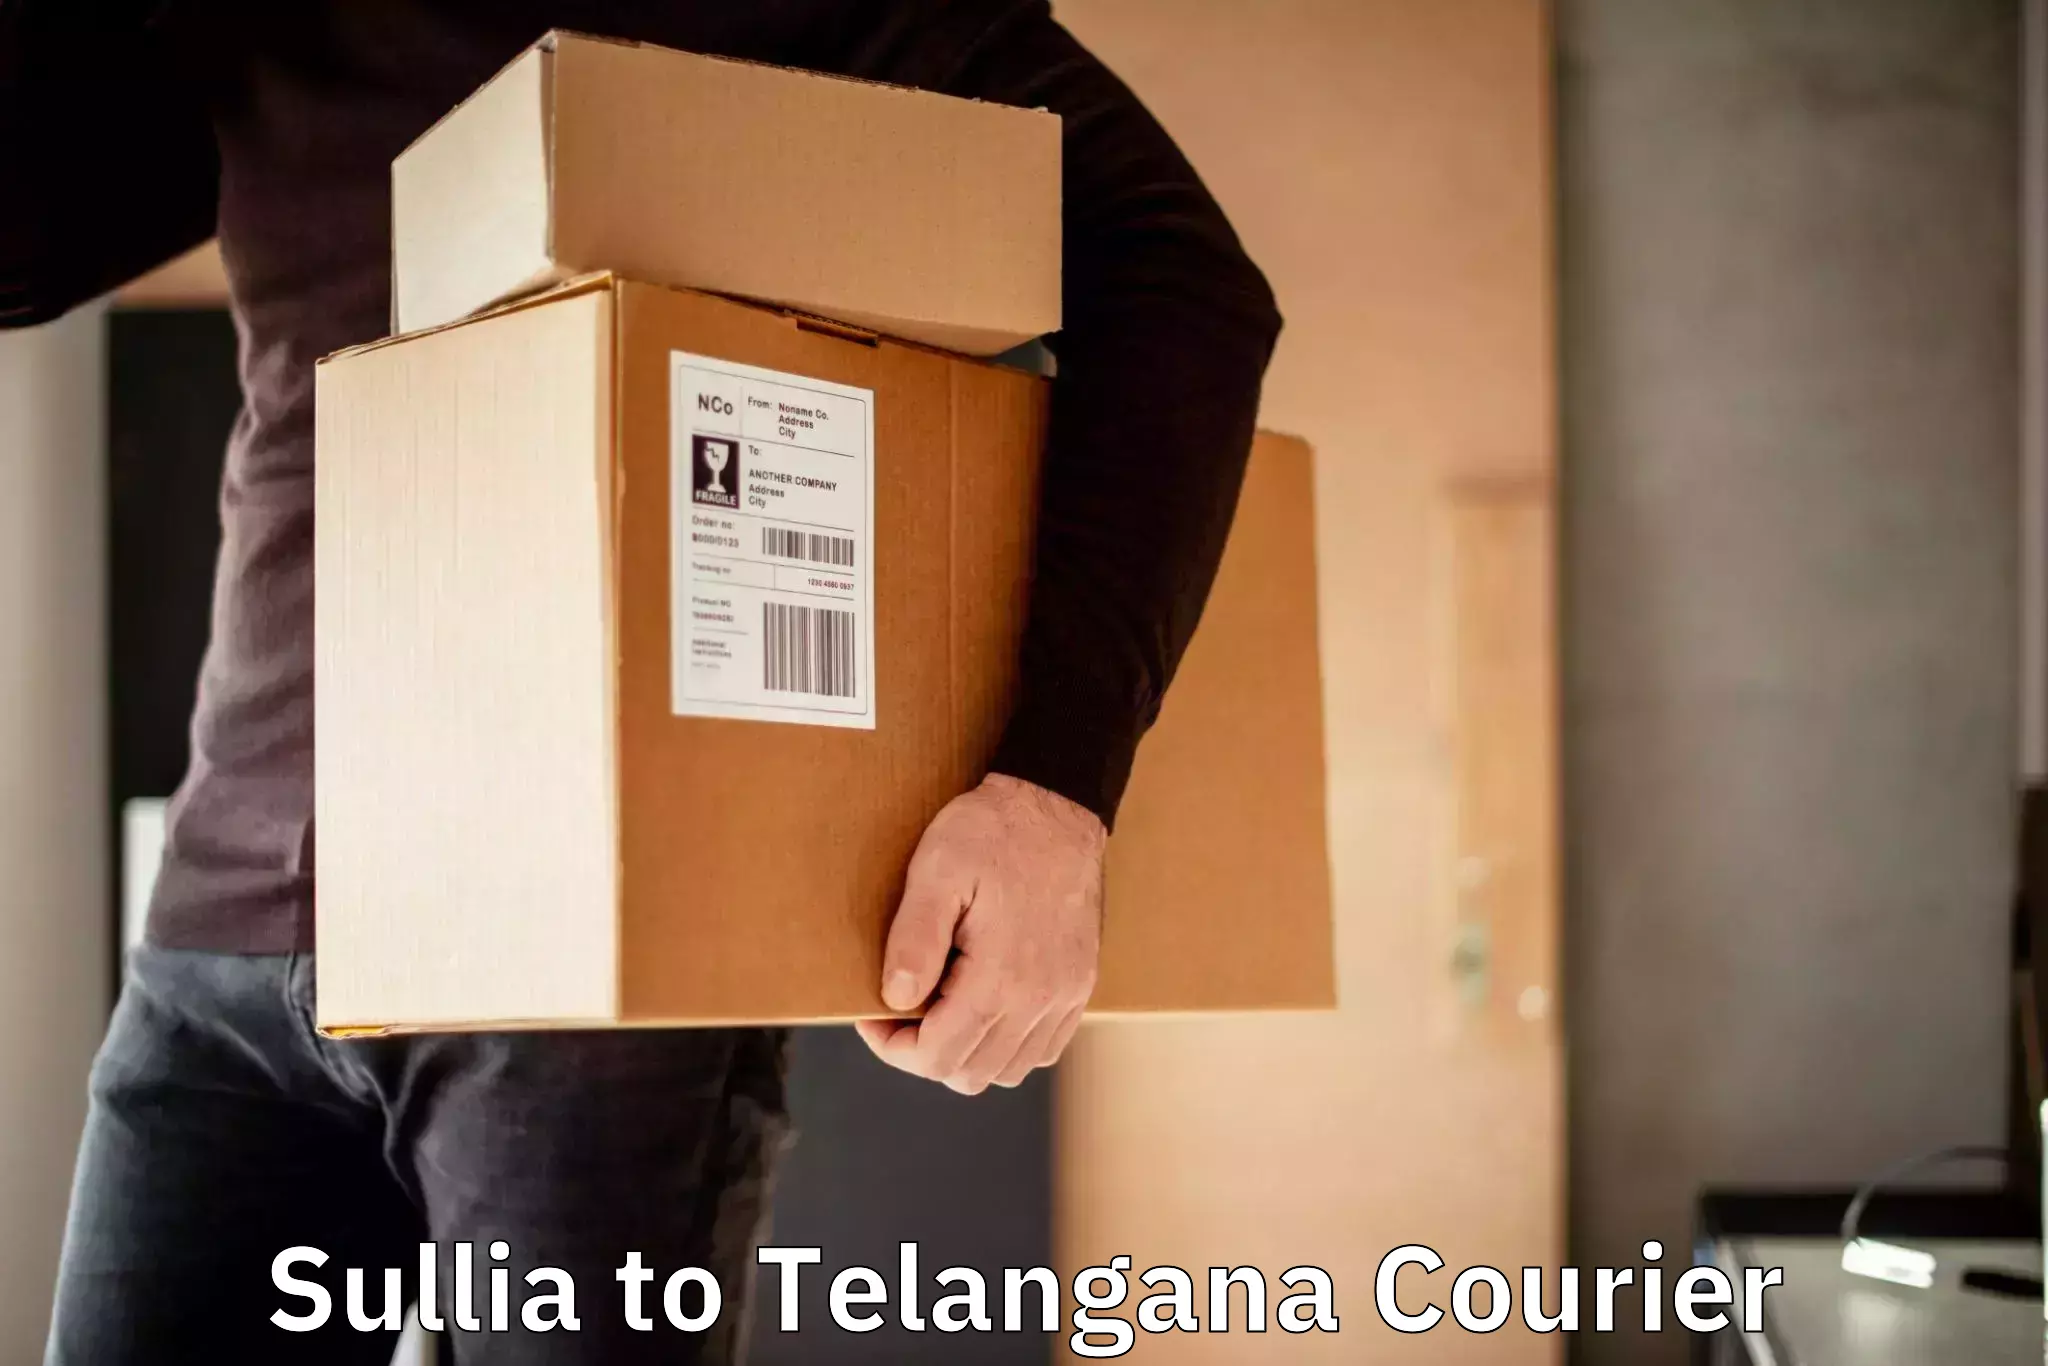 International courier networks Sullia to Nalgonda